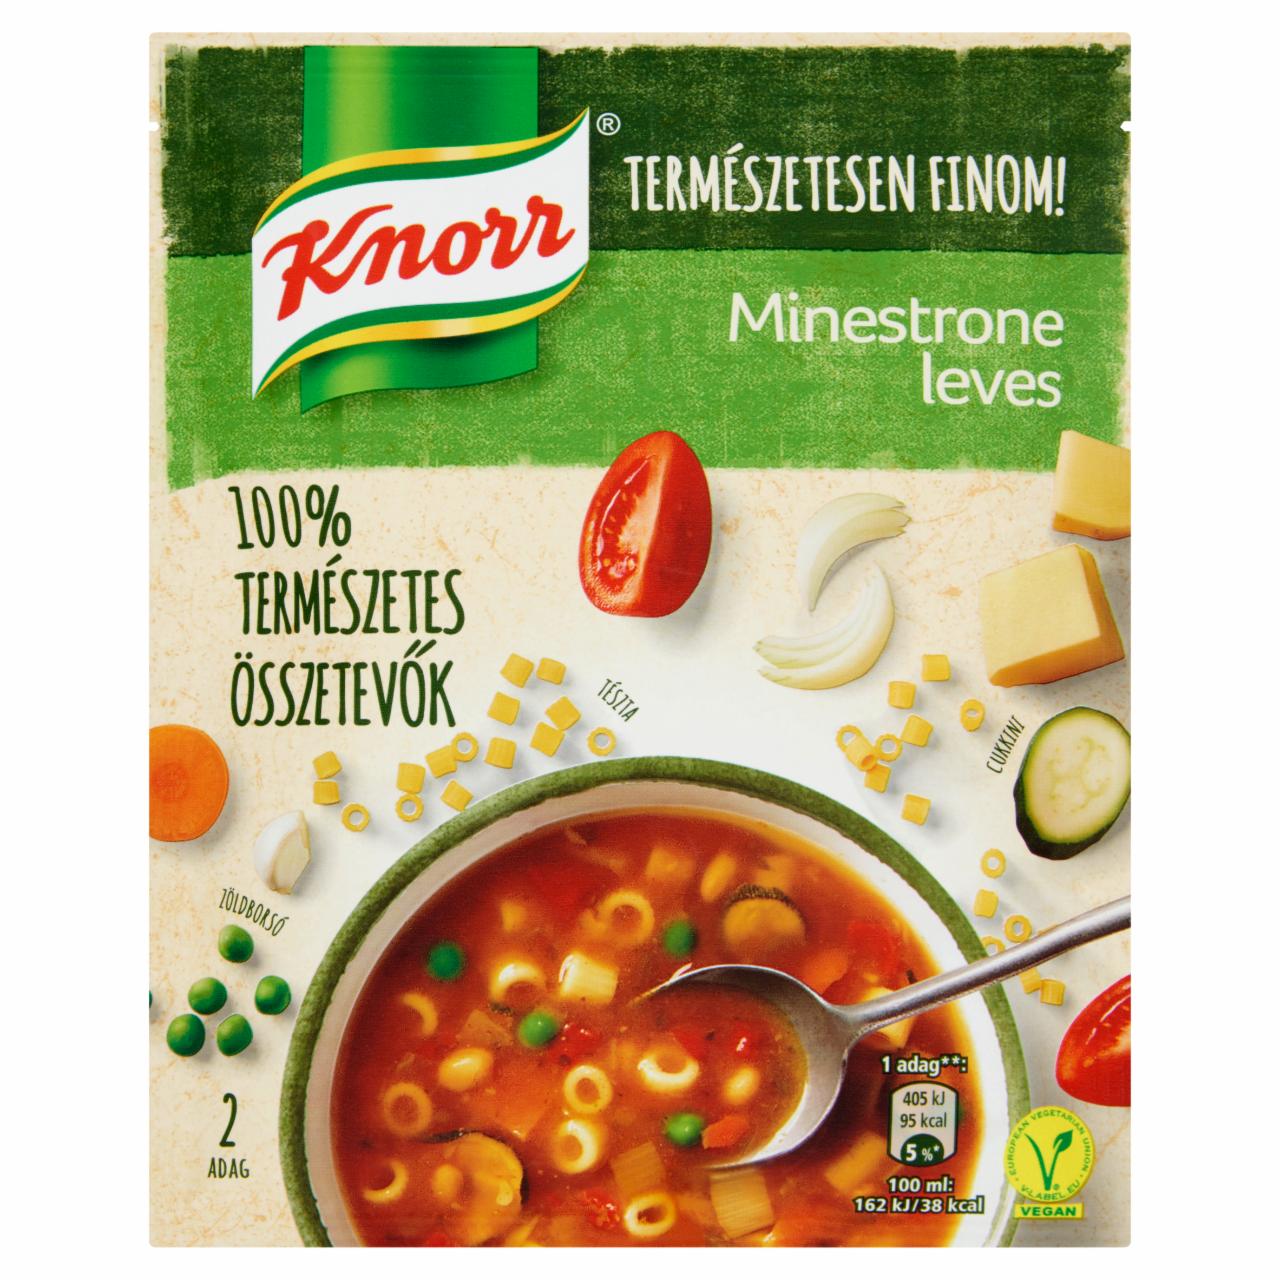 Képek - Knorr minestrone leves 57 g